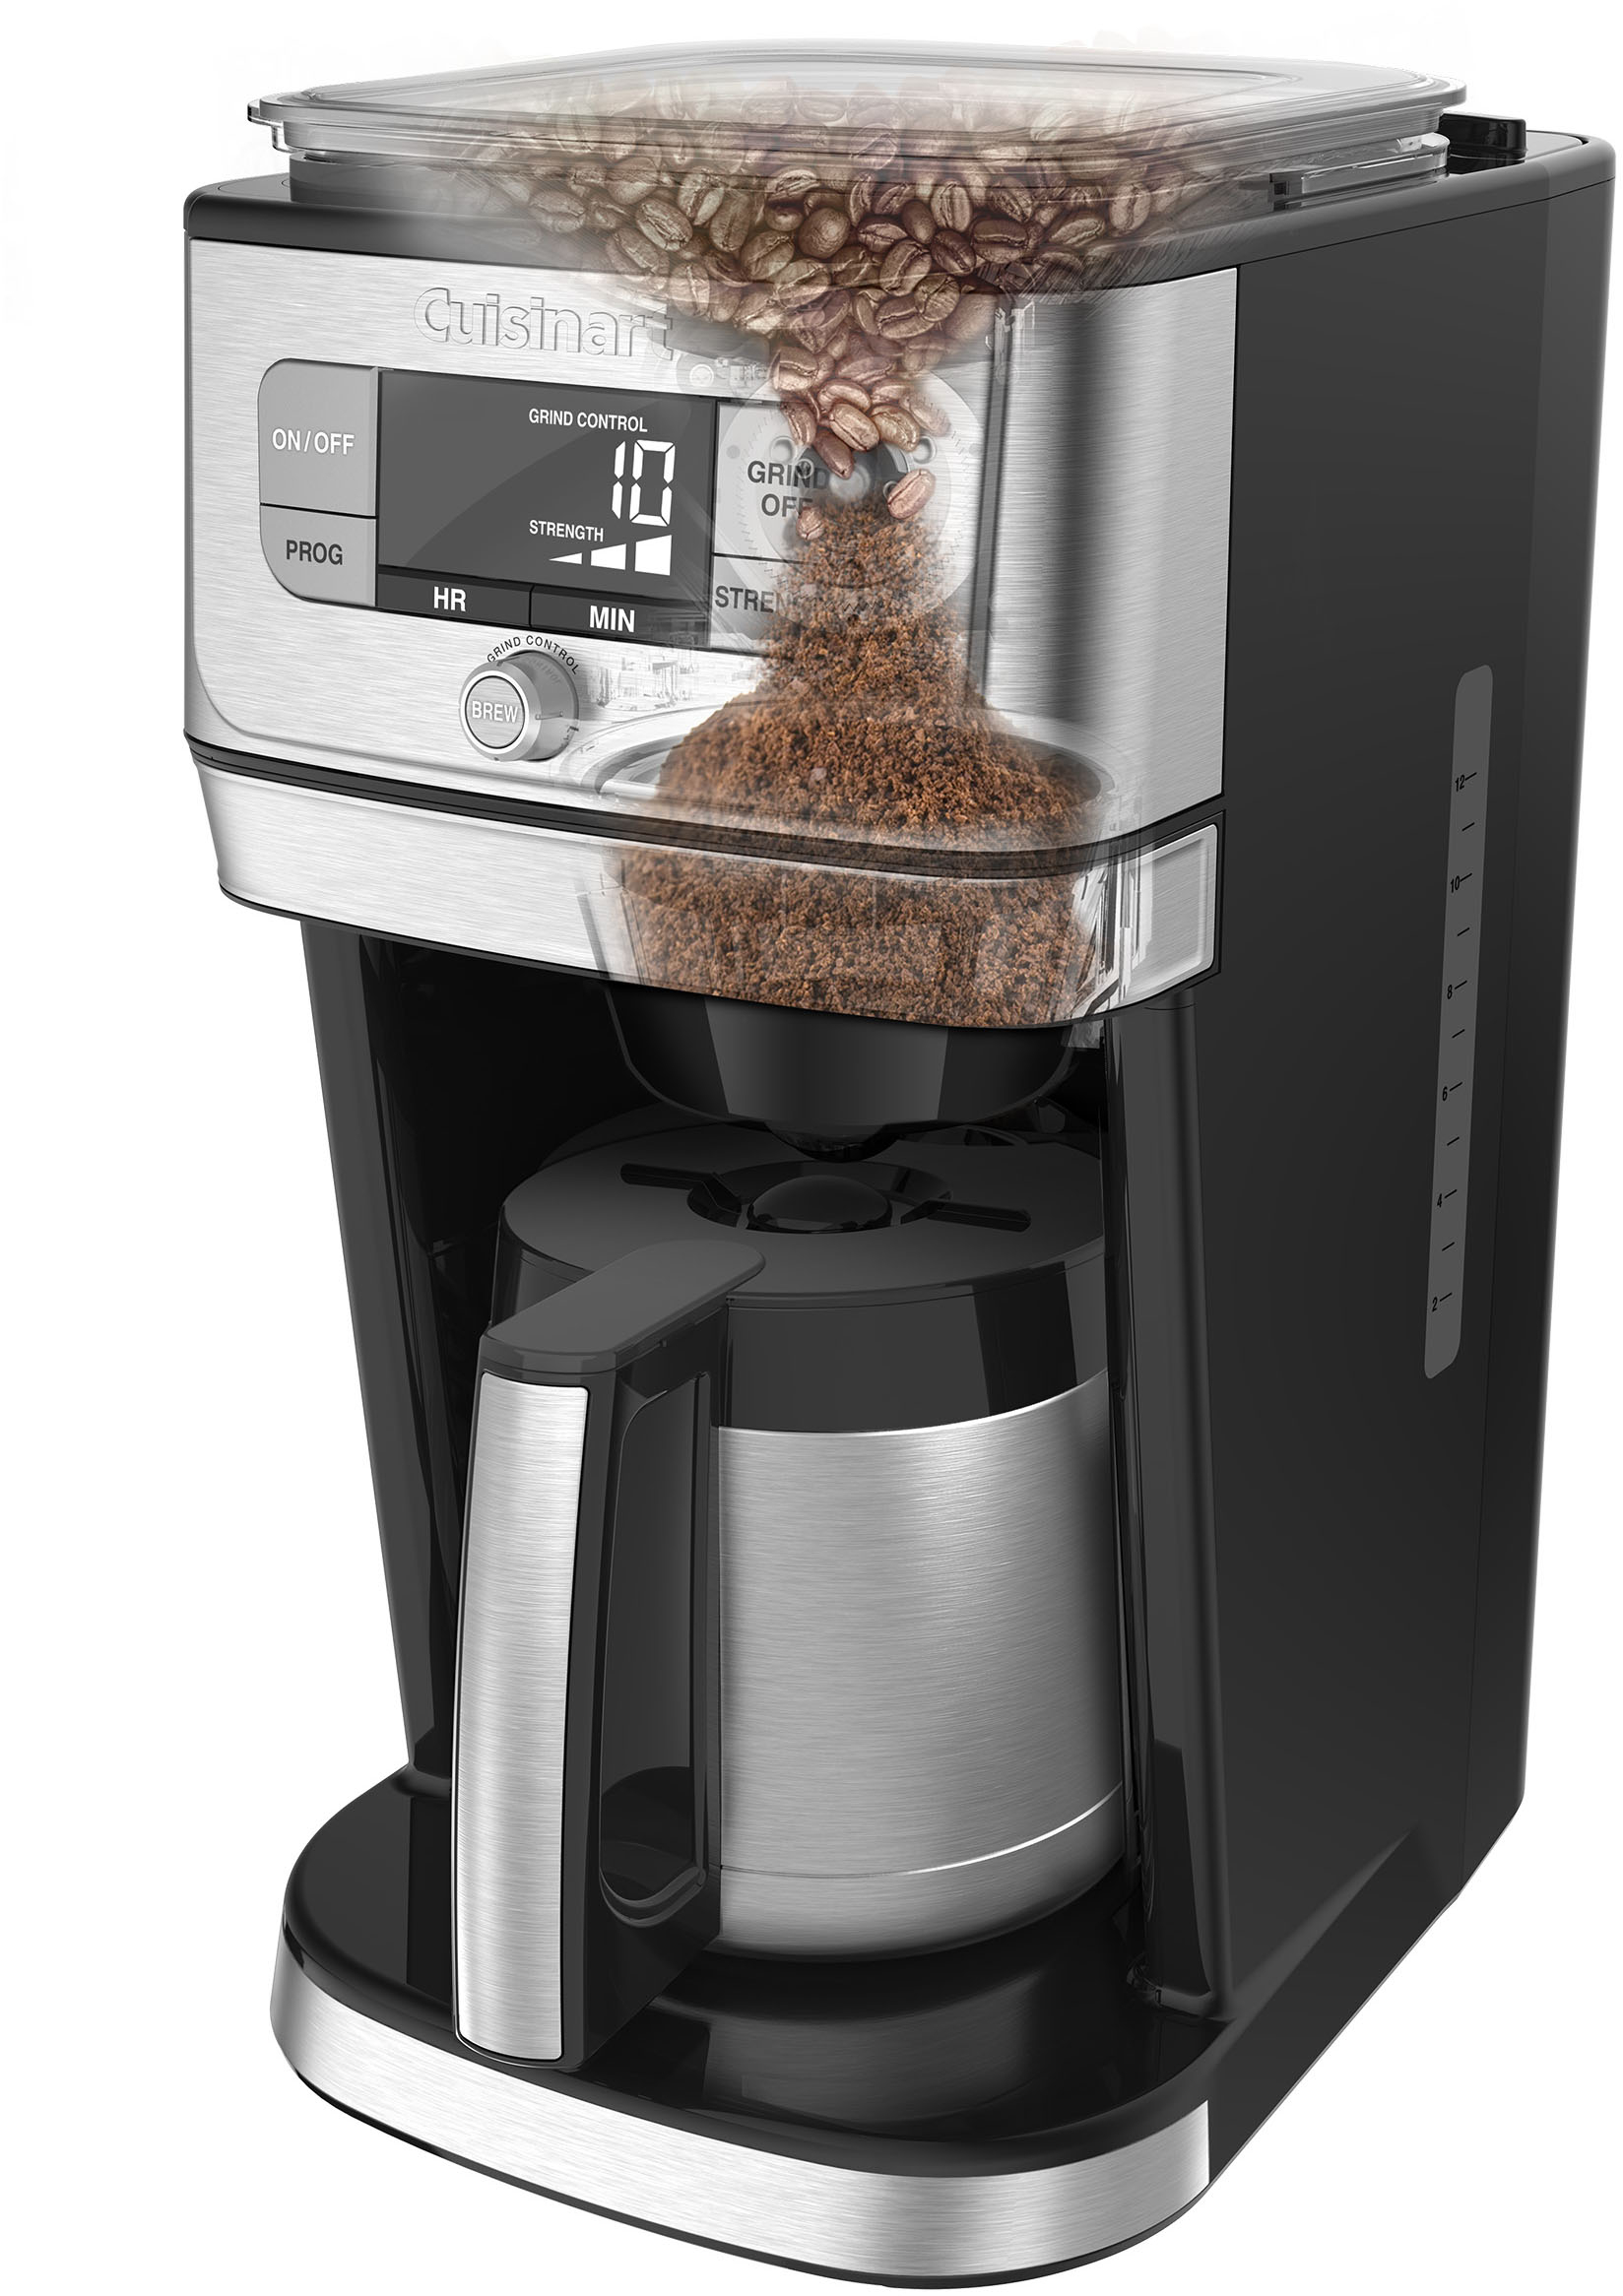 Cuisinart K-Cup Combo Grind & Brew Coffeemaker